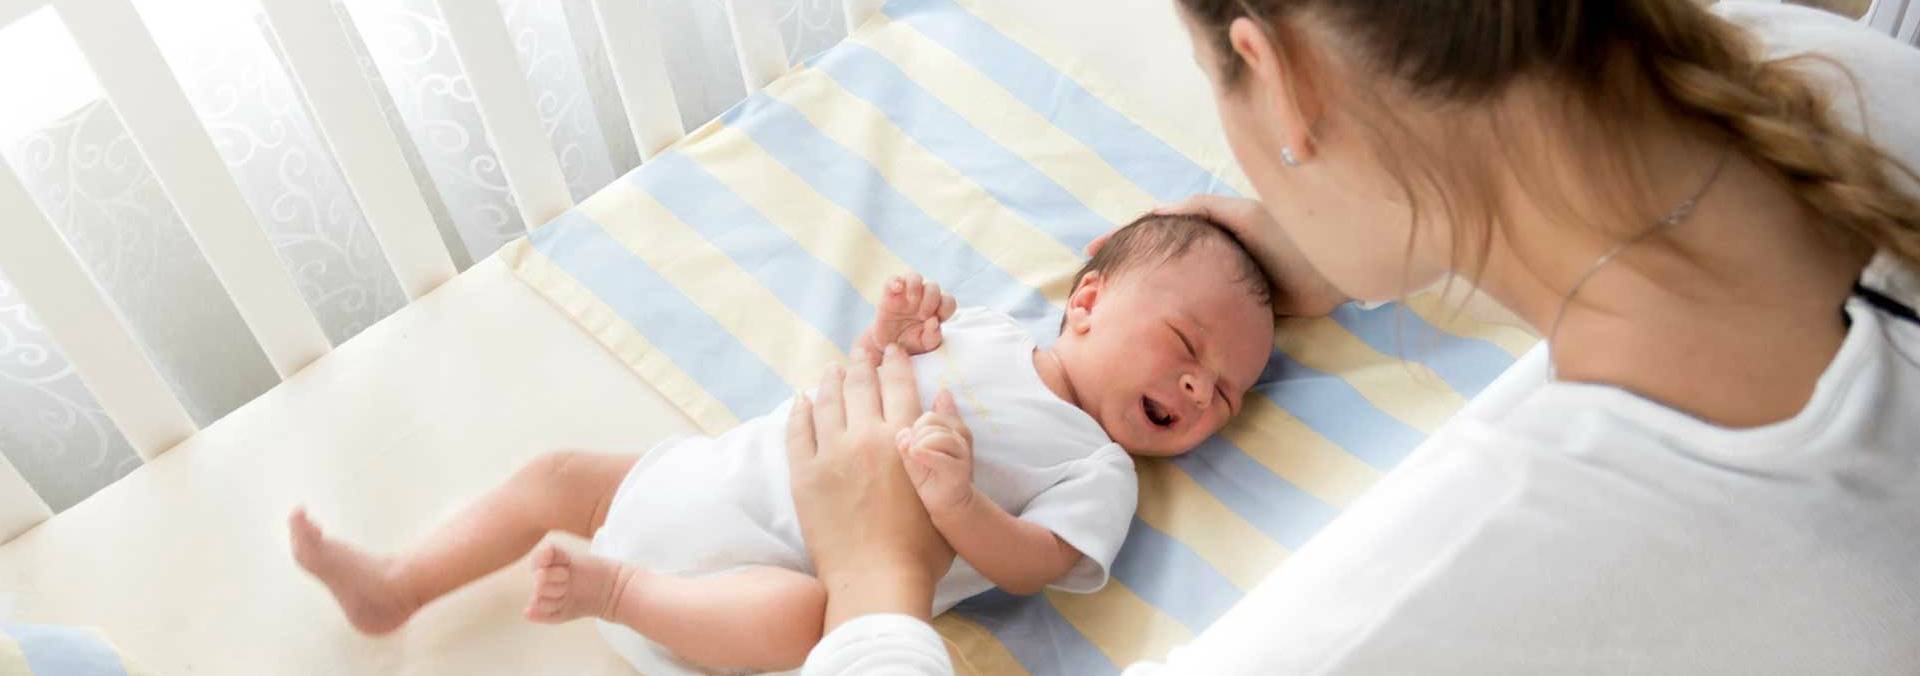 Как не приучить новорожденного ребенка к рукам?